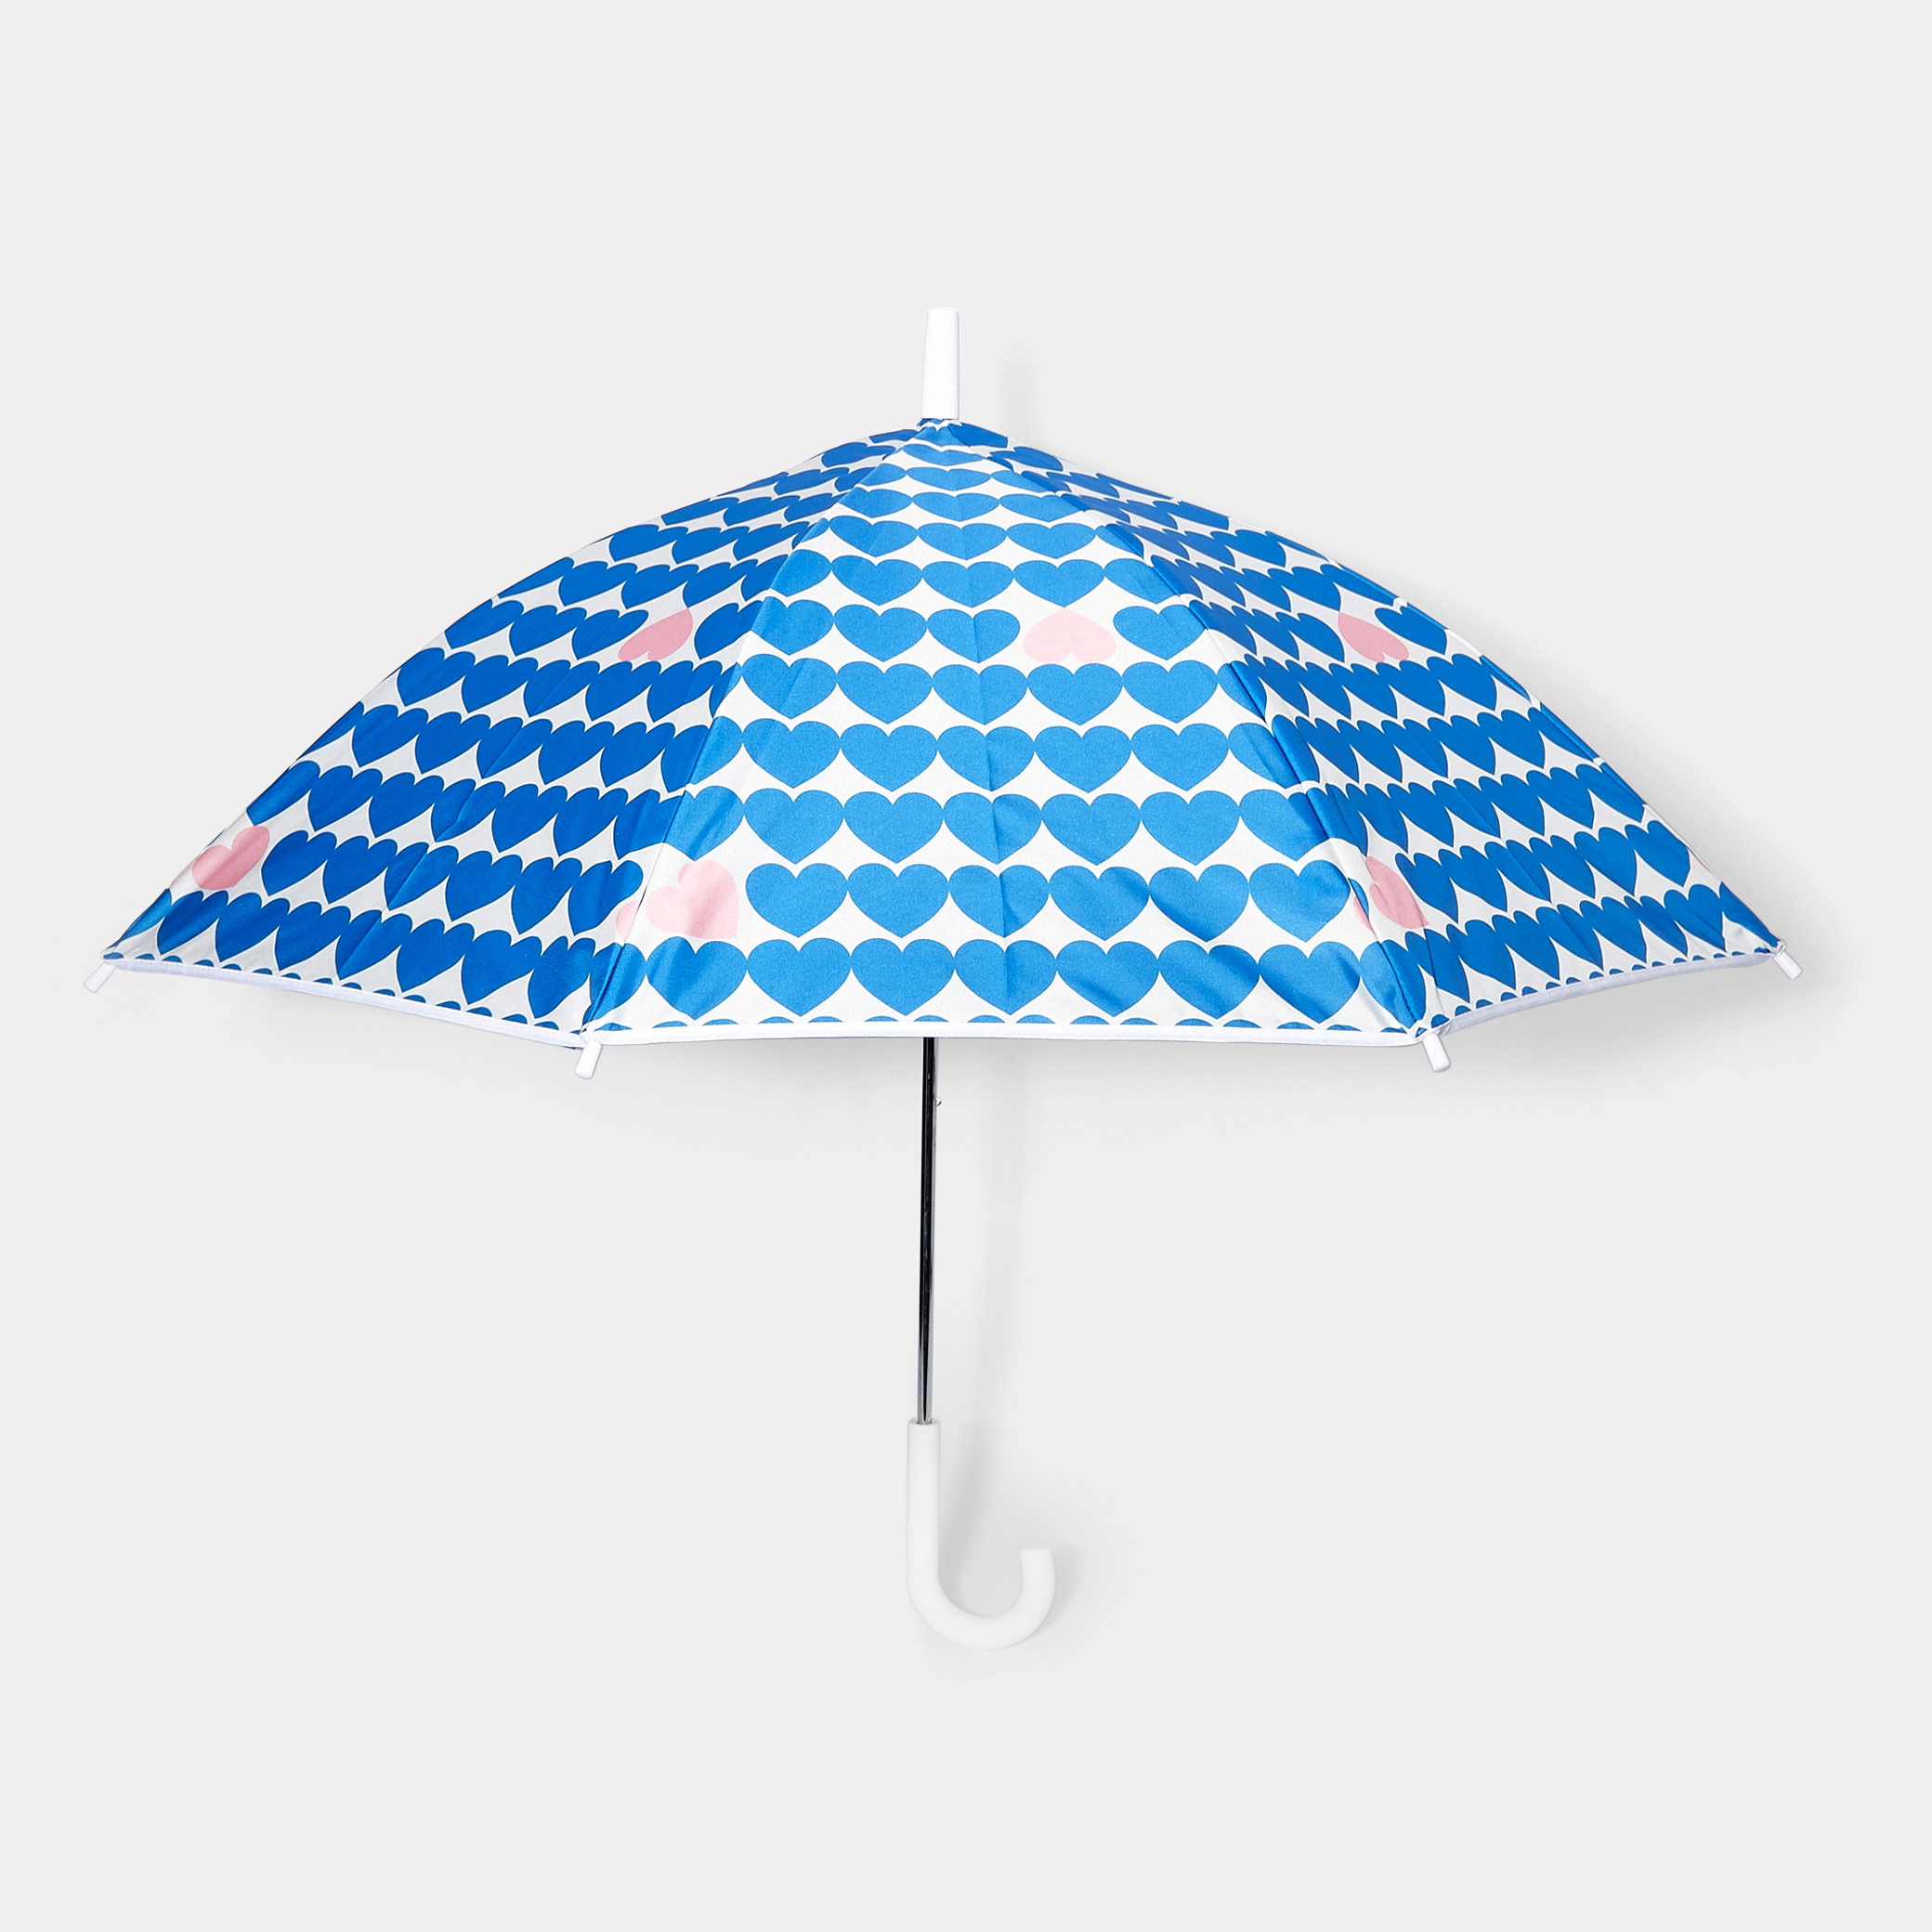 Maison Piganiol umbrella